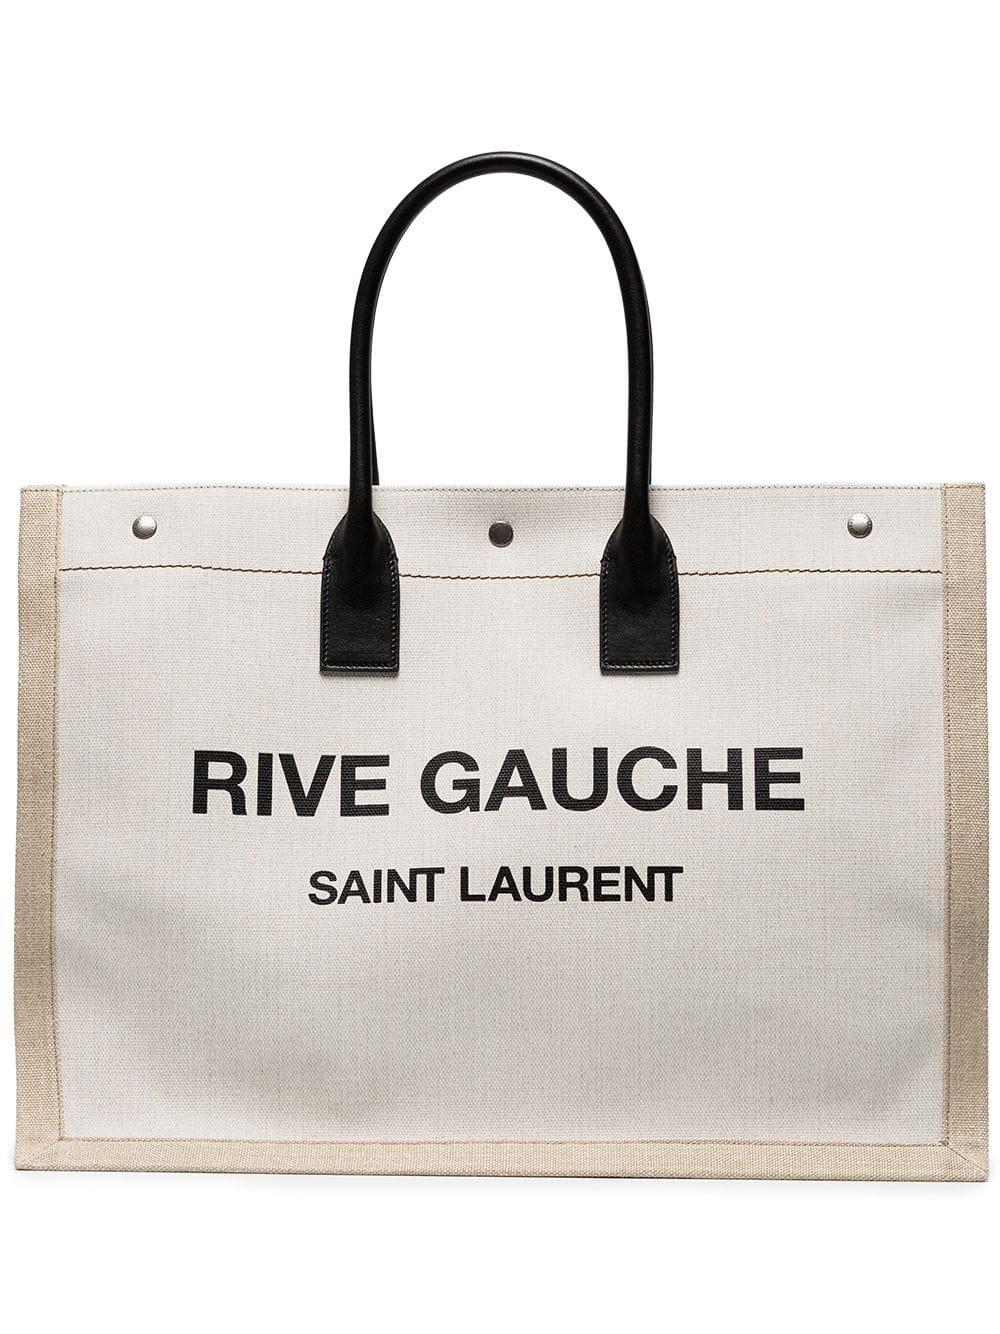 Saint Laurent Canvas Rive Gauche Tote Bag for Men - Lyst